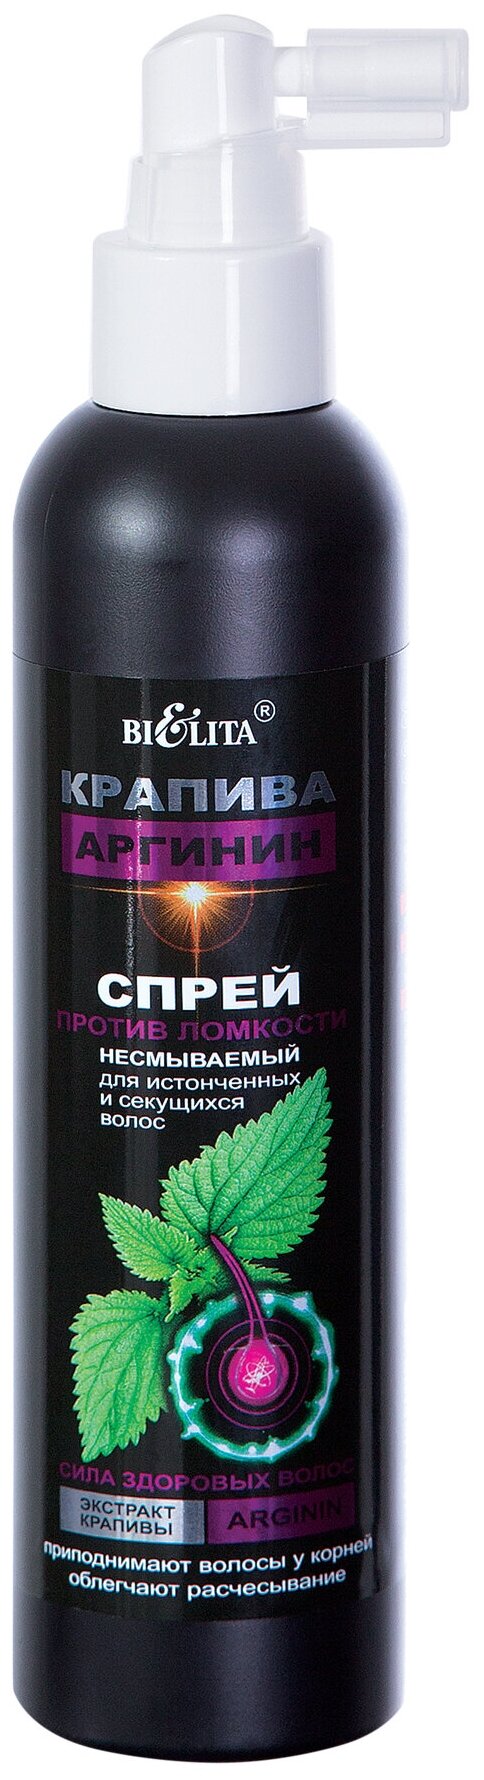 Купить Bielita КРАПИВА и АРГИНИН Спрей против ломкости несмываемый для истонченных и секущихся волос, 200 мл по низкой цене с доставкой из Яндекс.Маркета